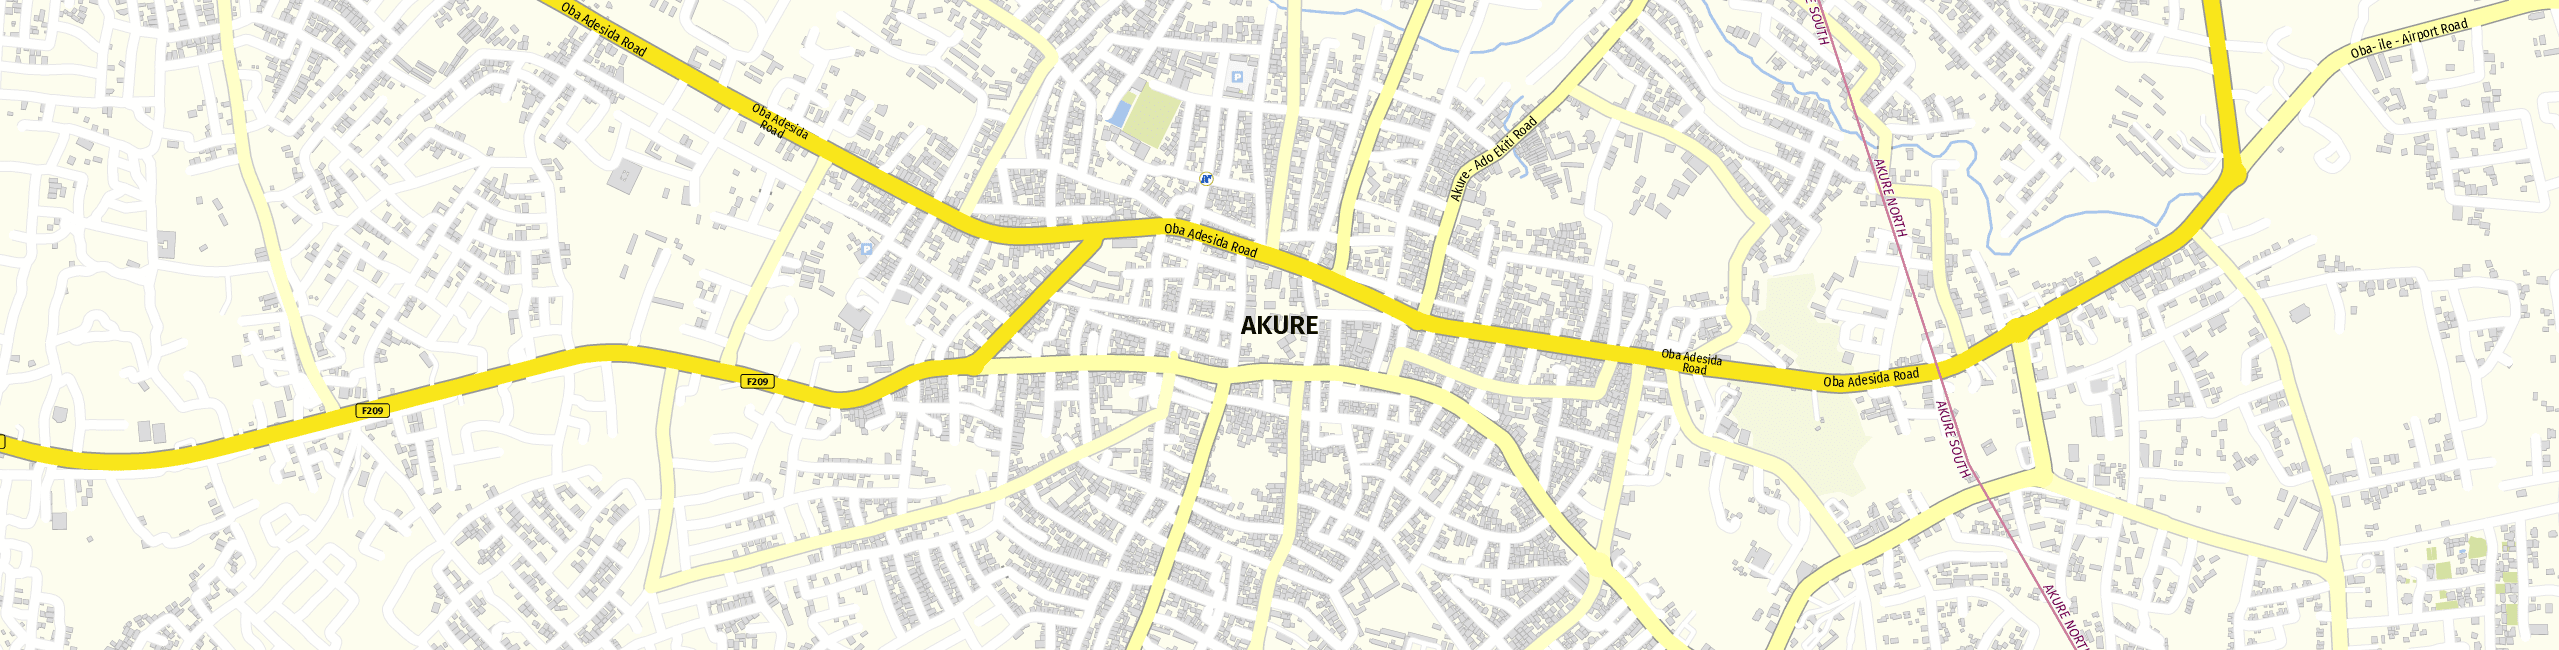 Stadtplan Akure zum Downloaden.